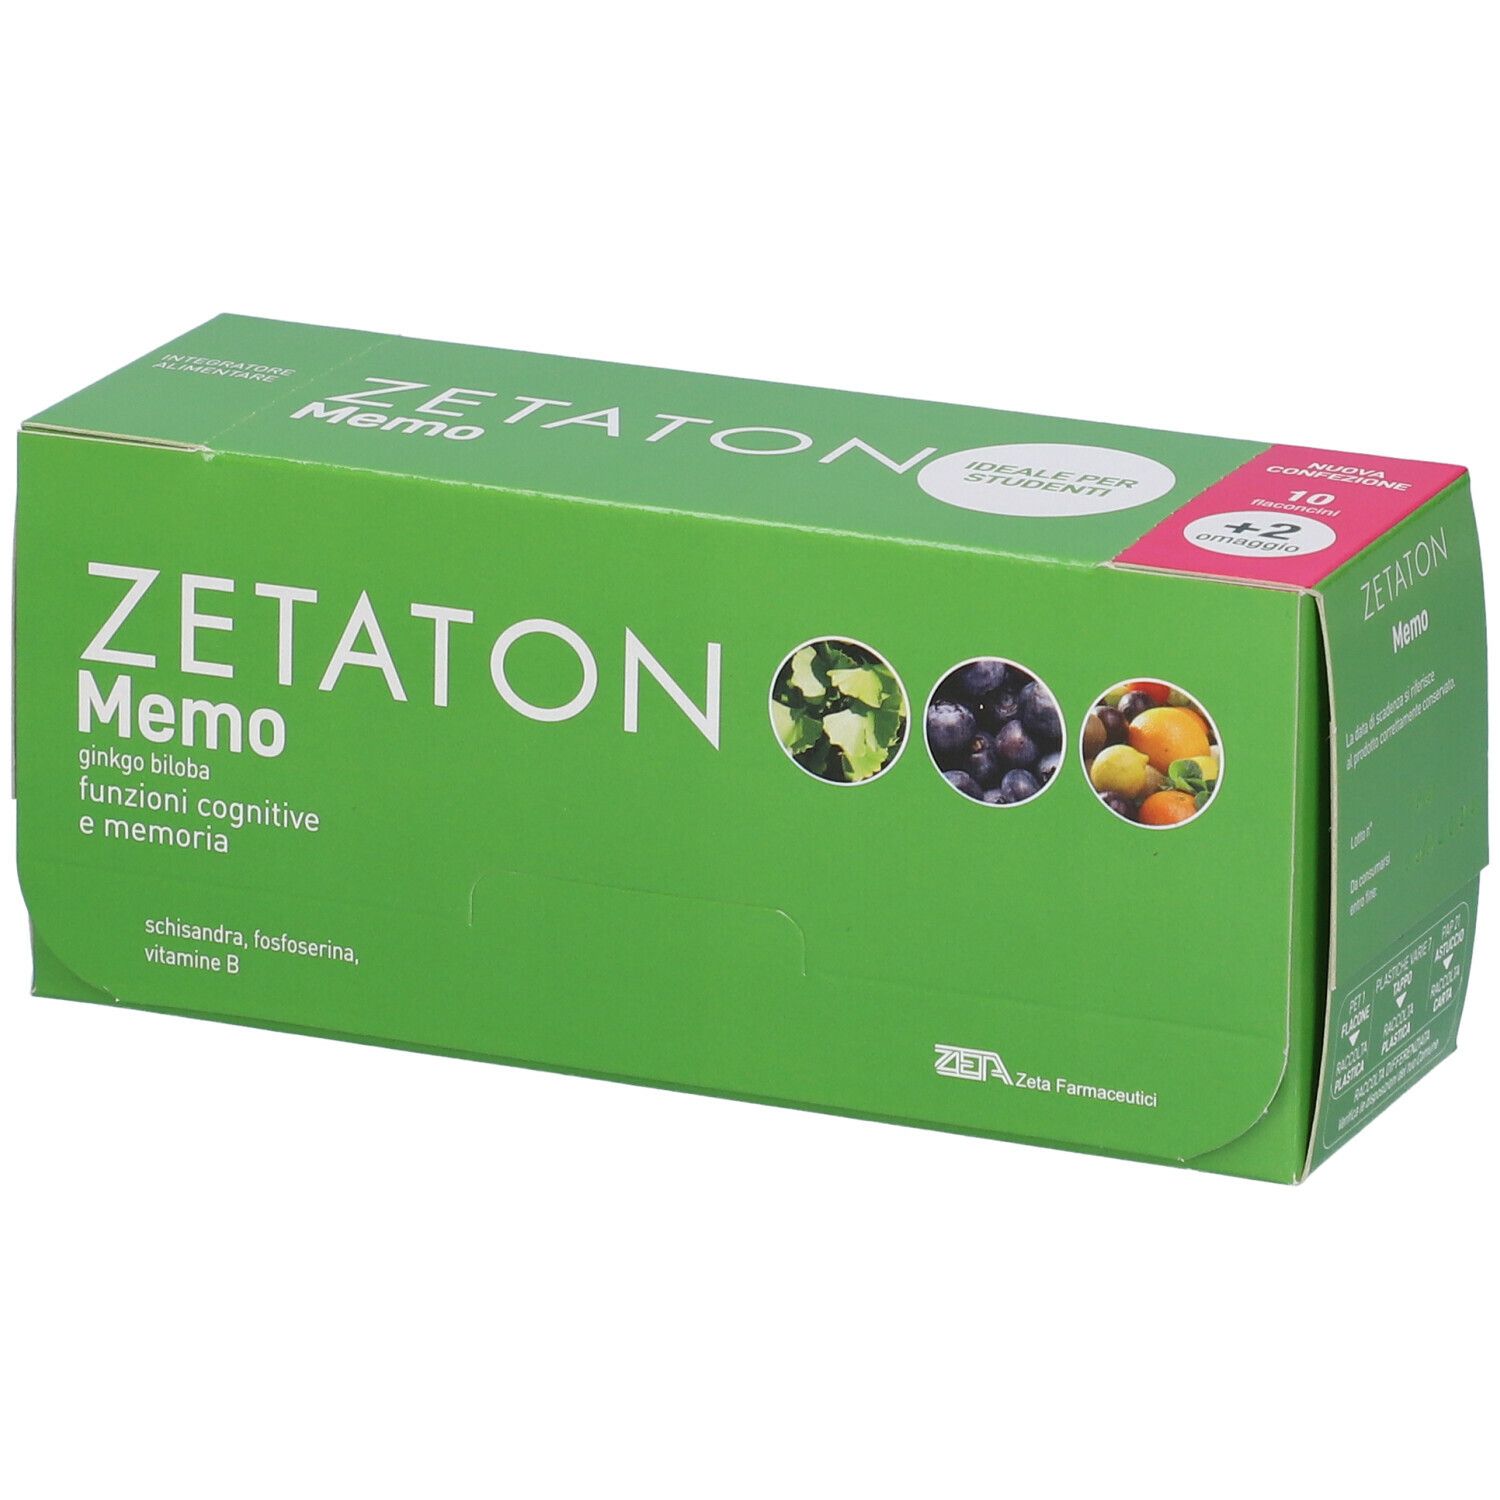 Image of Zetaton Memo Integratore Alimentare